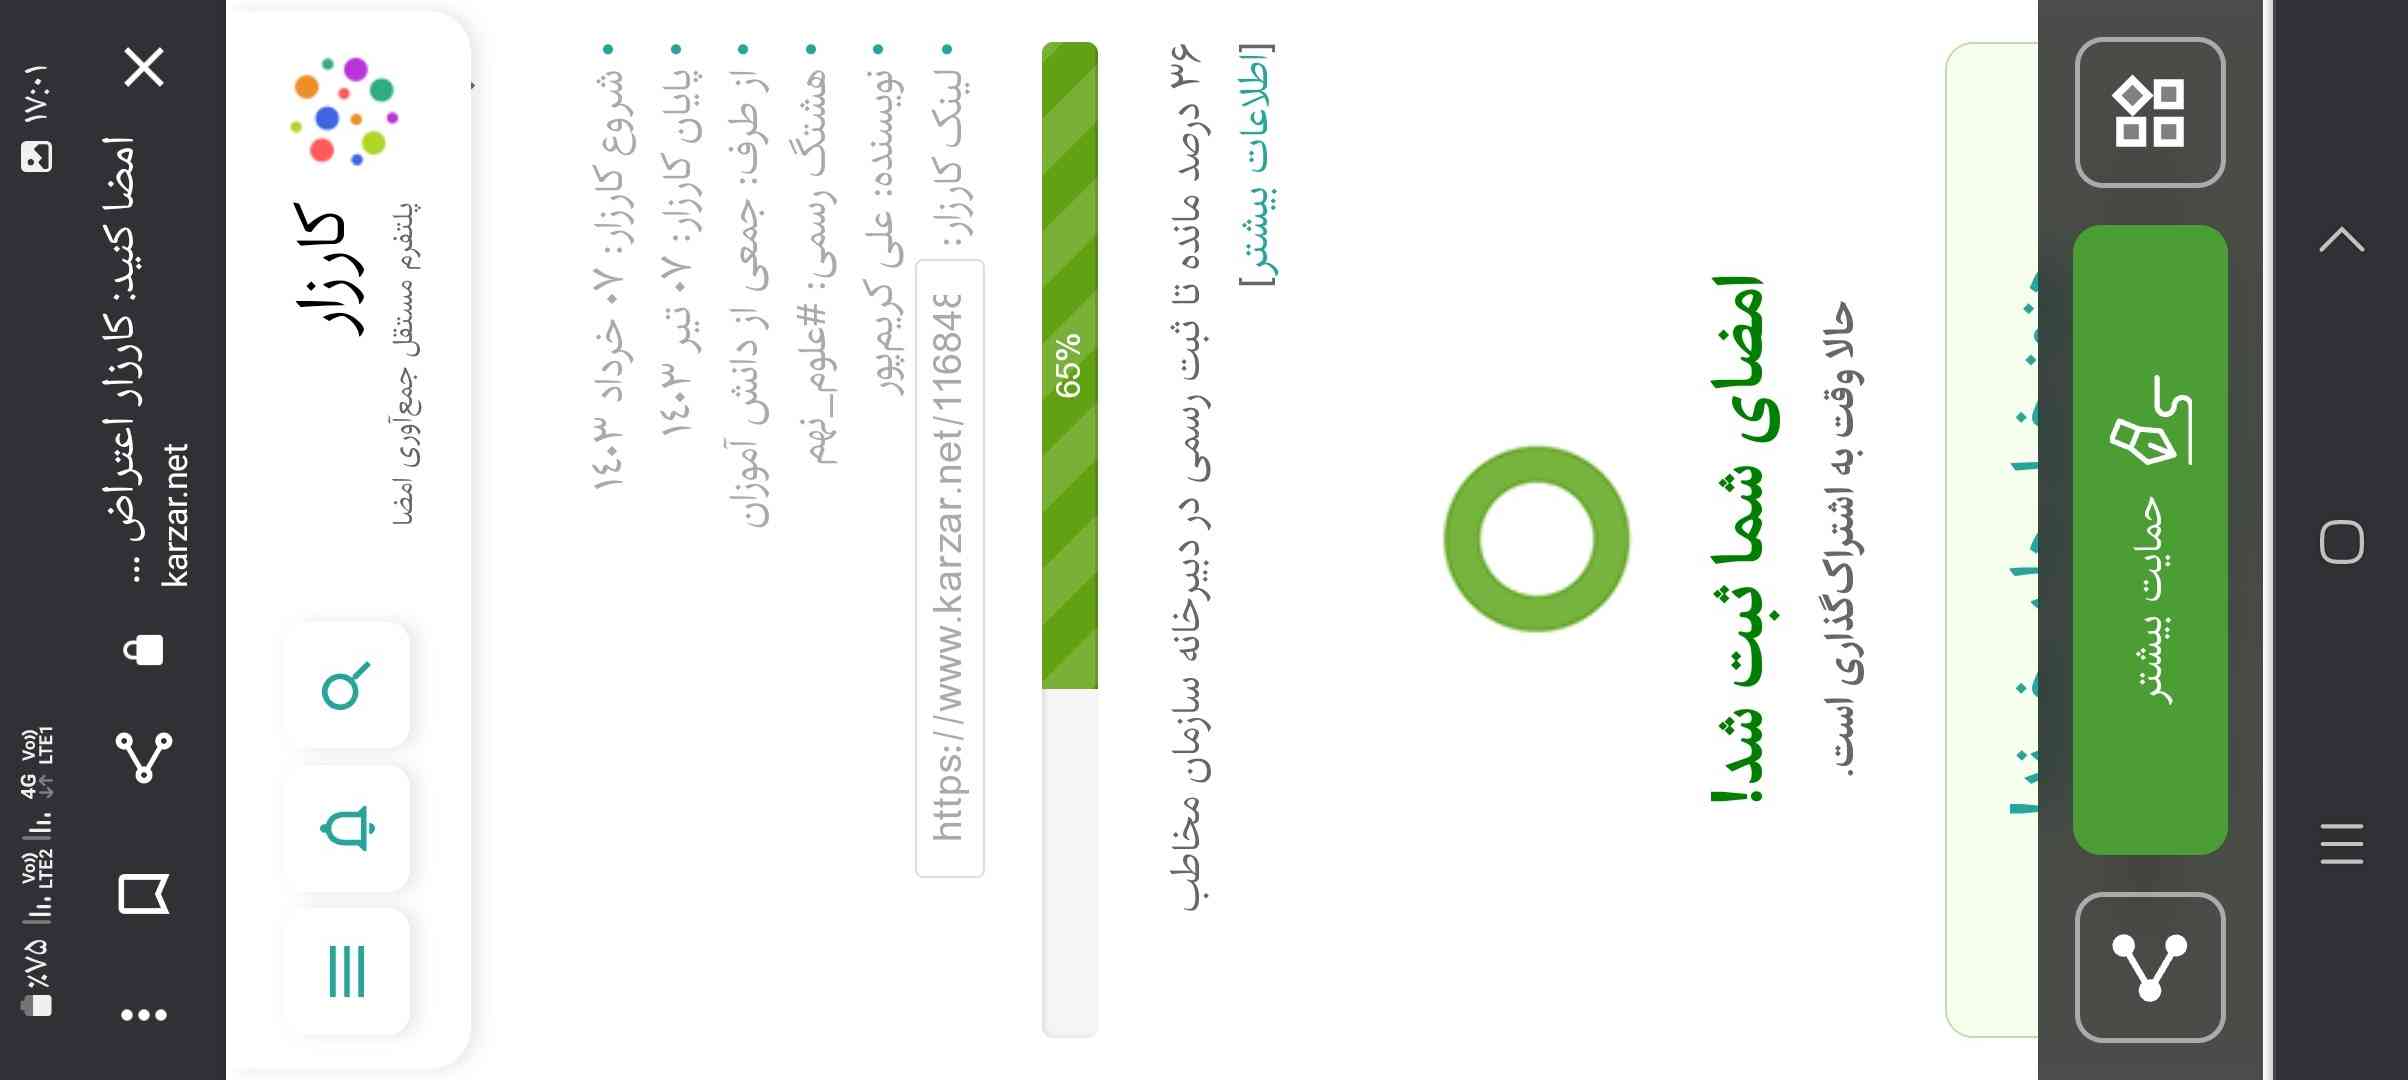 36 بیشتر نمونده🥺♥
#شماهم_حمایت _کنید